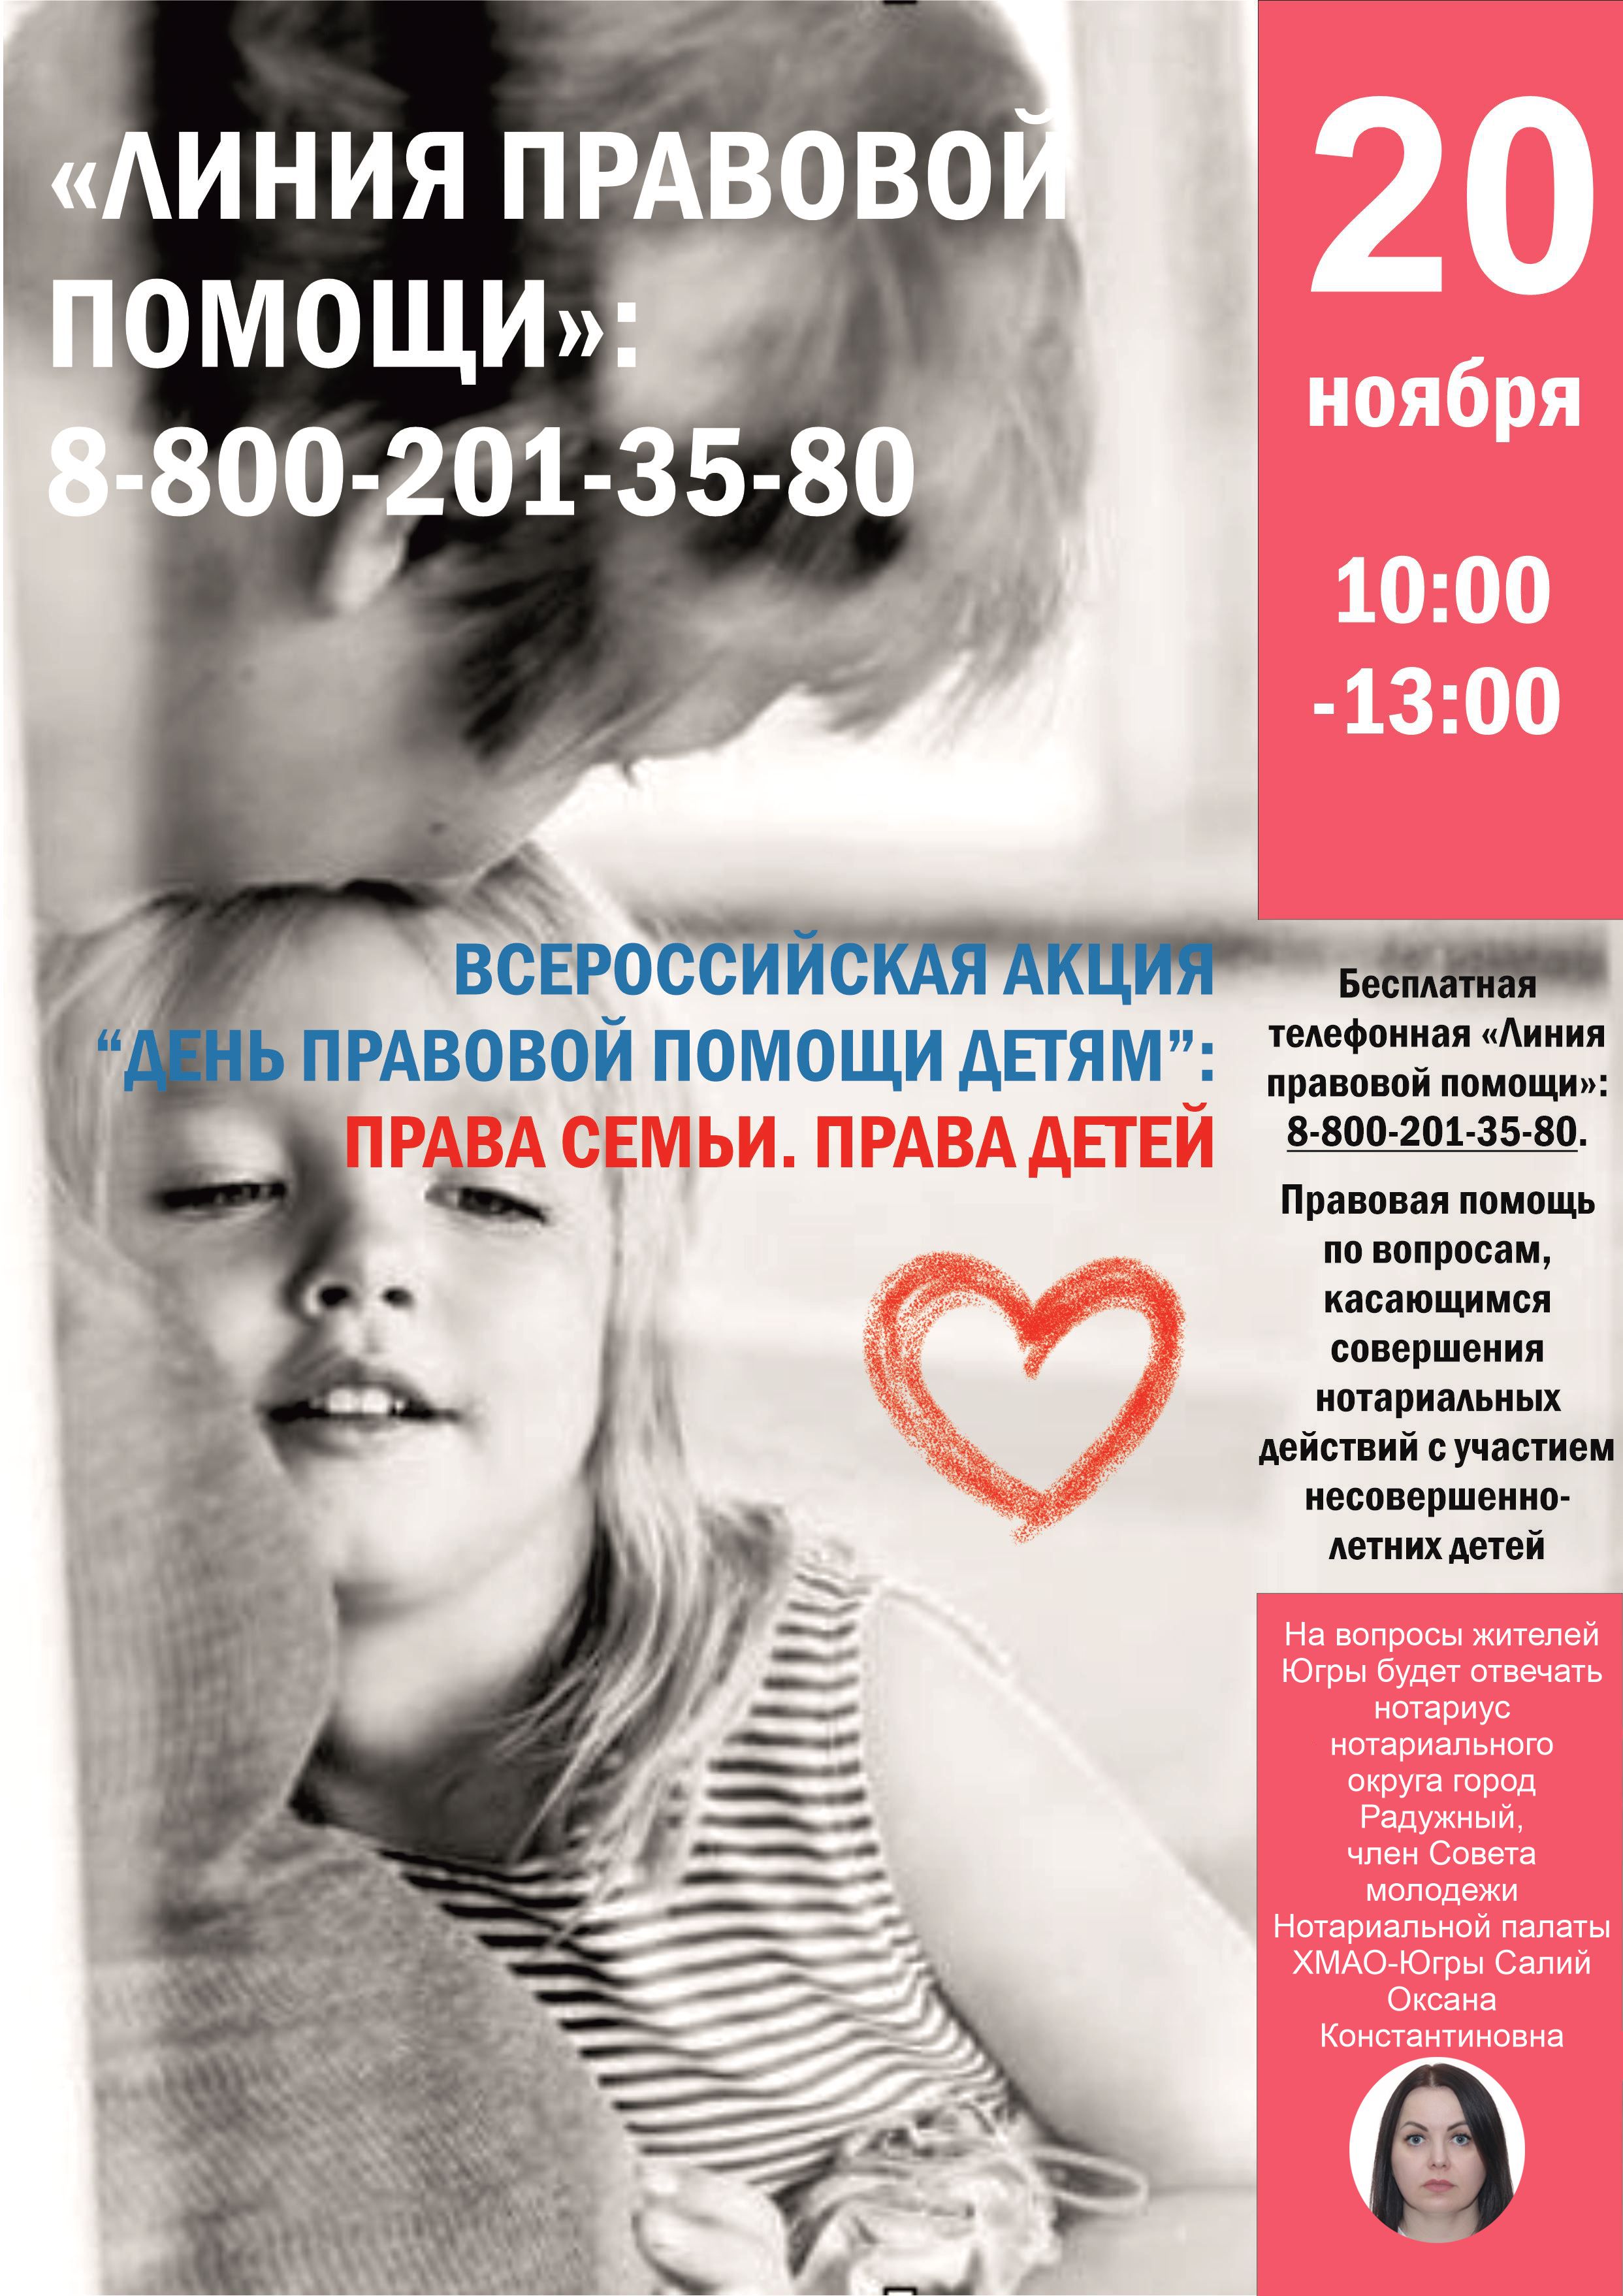 20 ноября нотариусы Югры поддержат всероссийскую акцию - День правовой помощи детям 